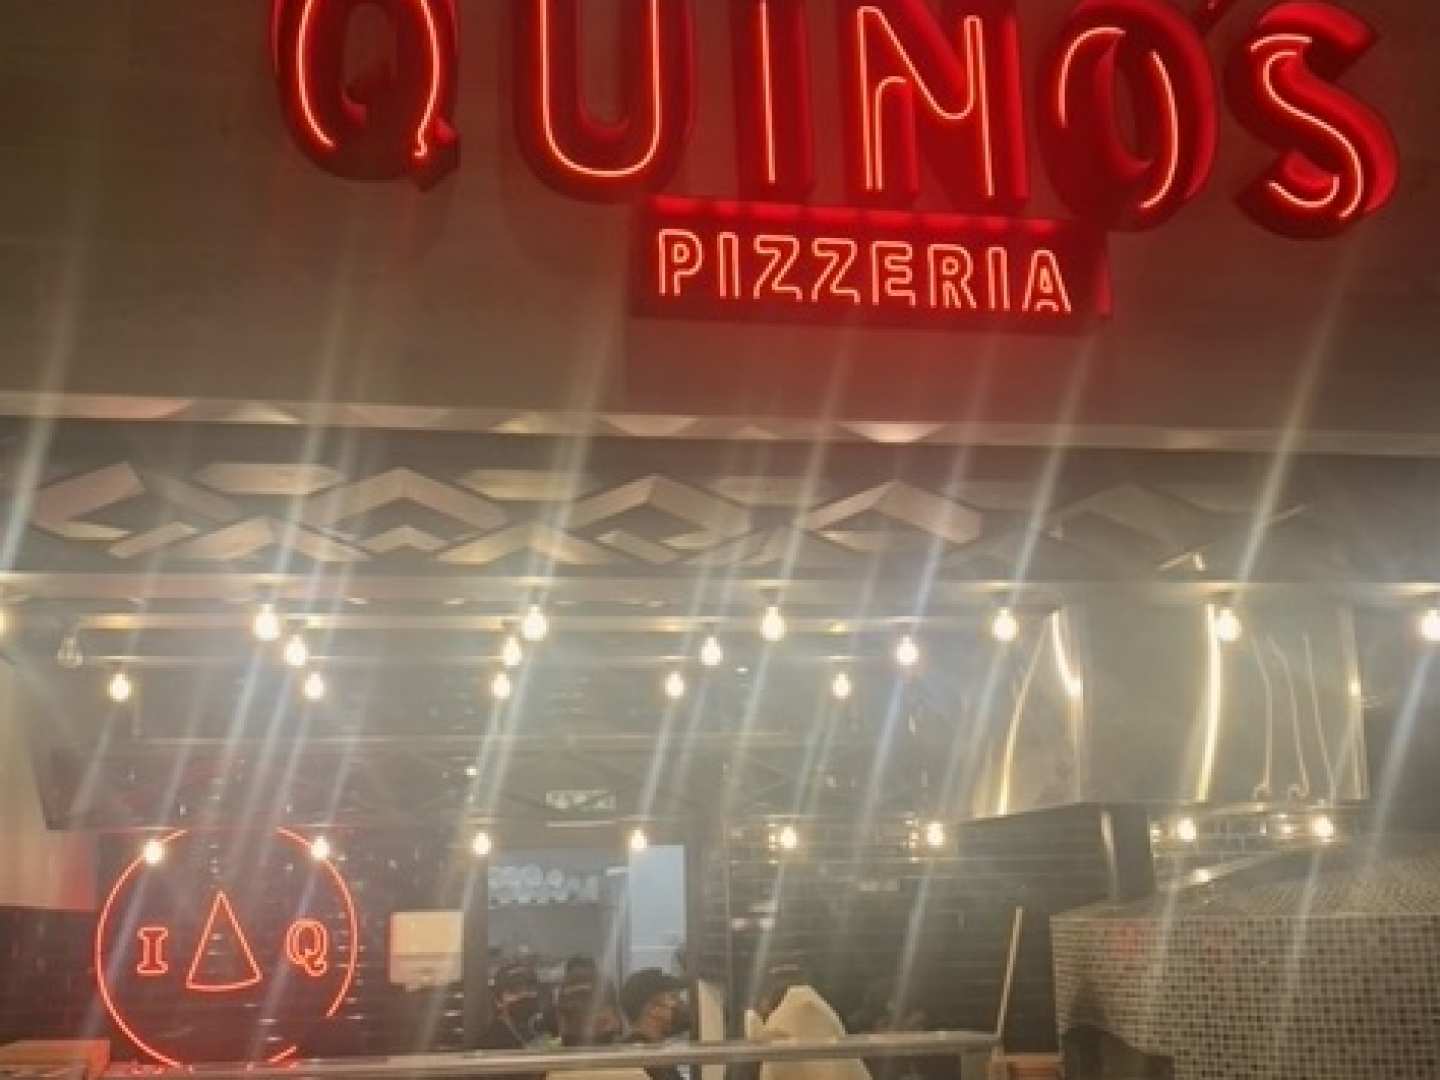 Quino's (Plaza Décima)